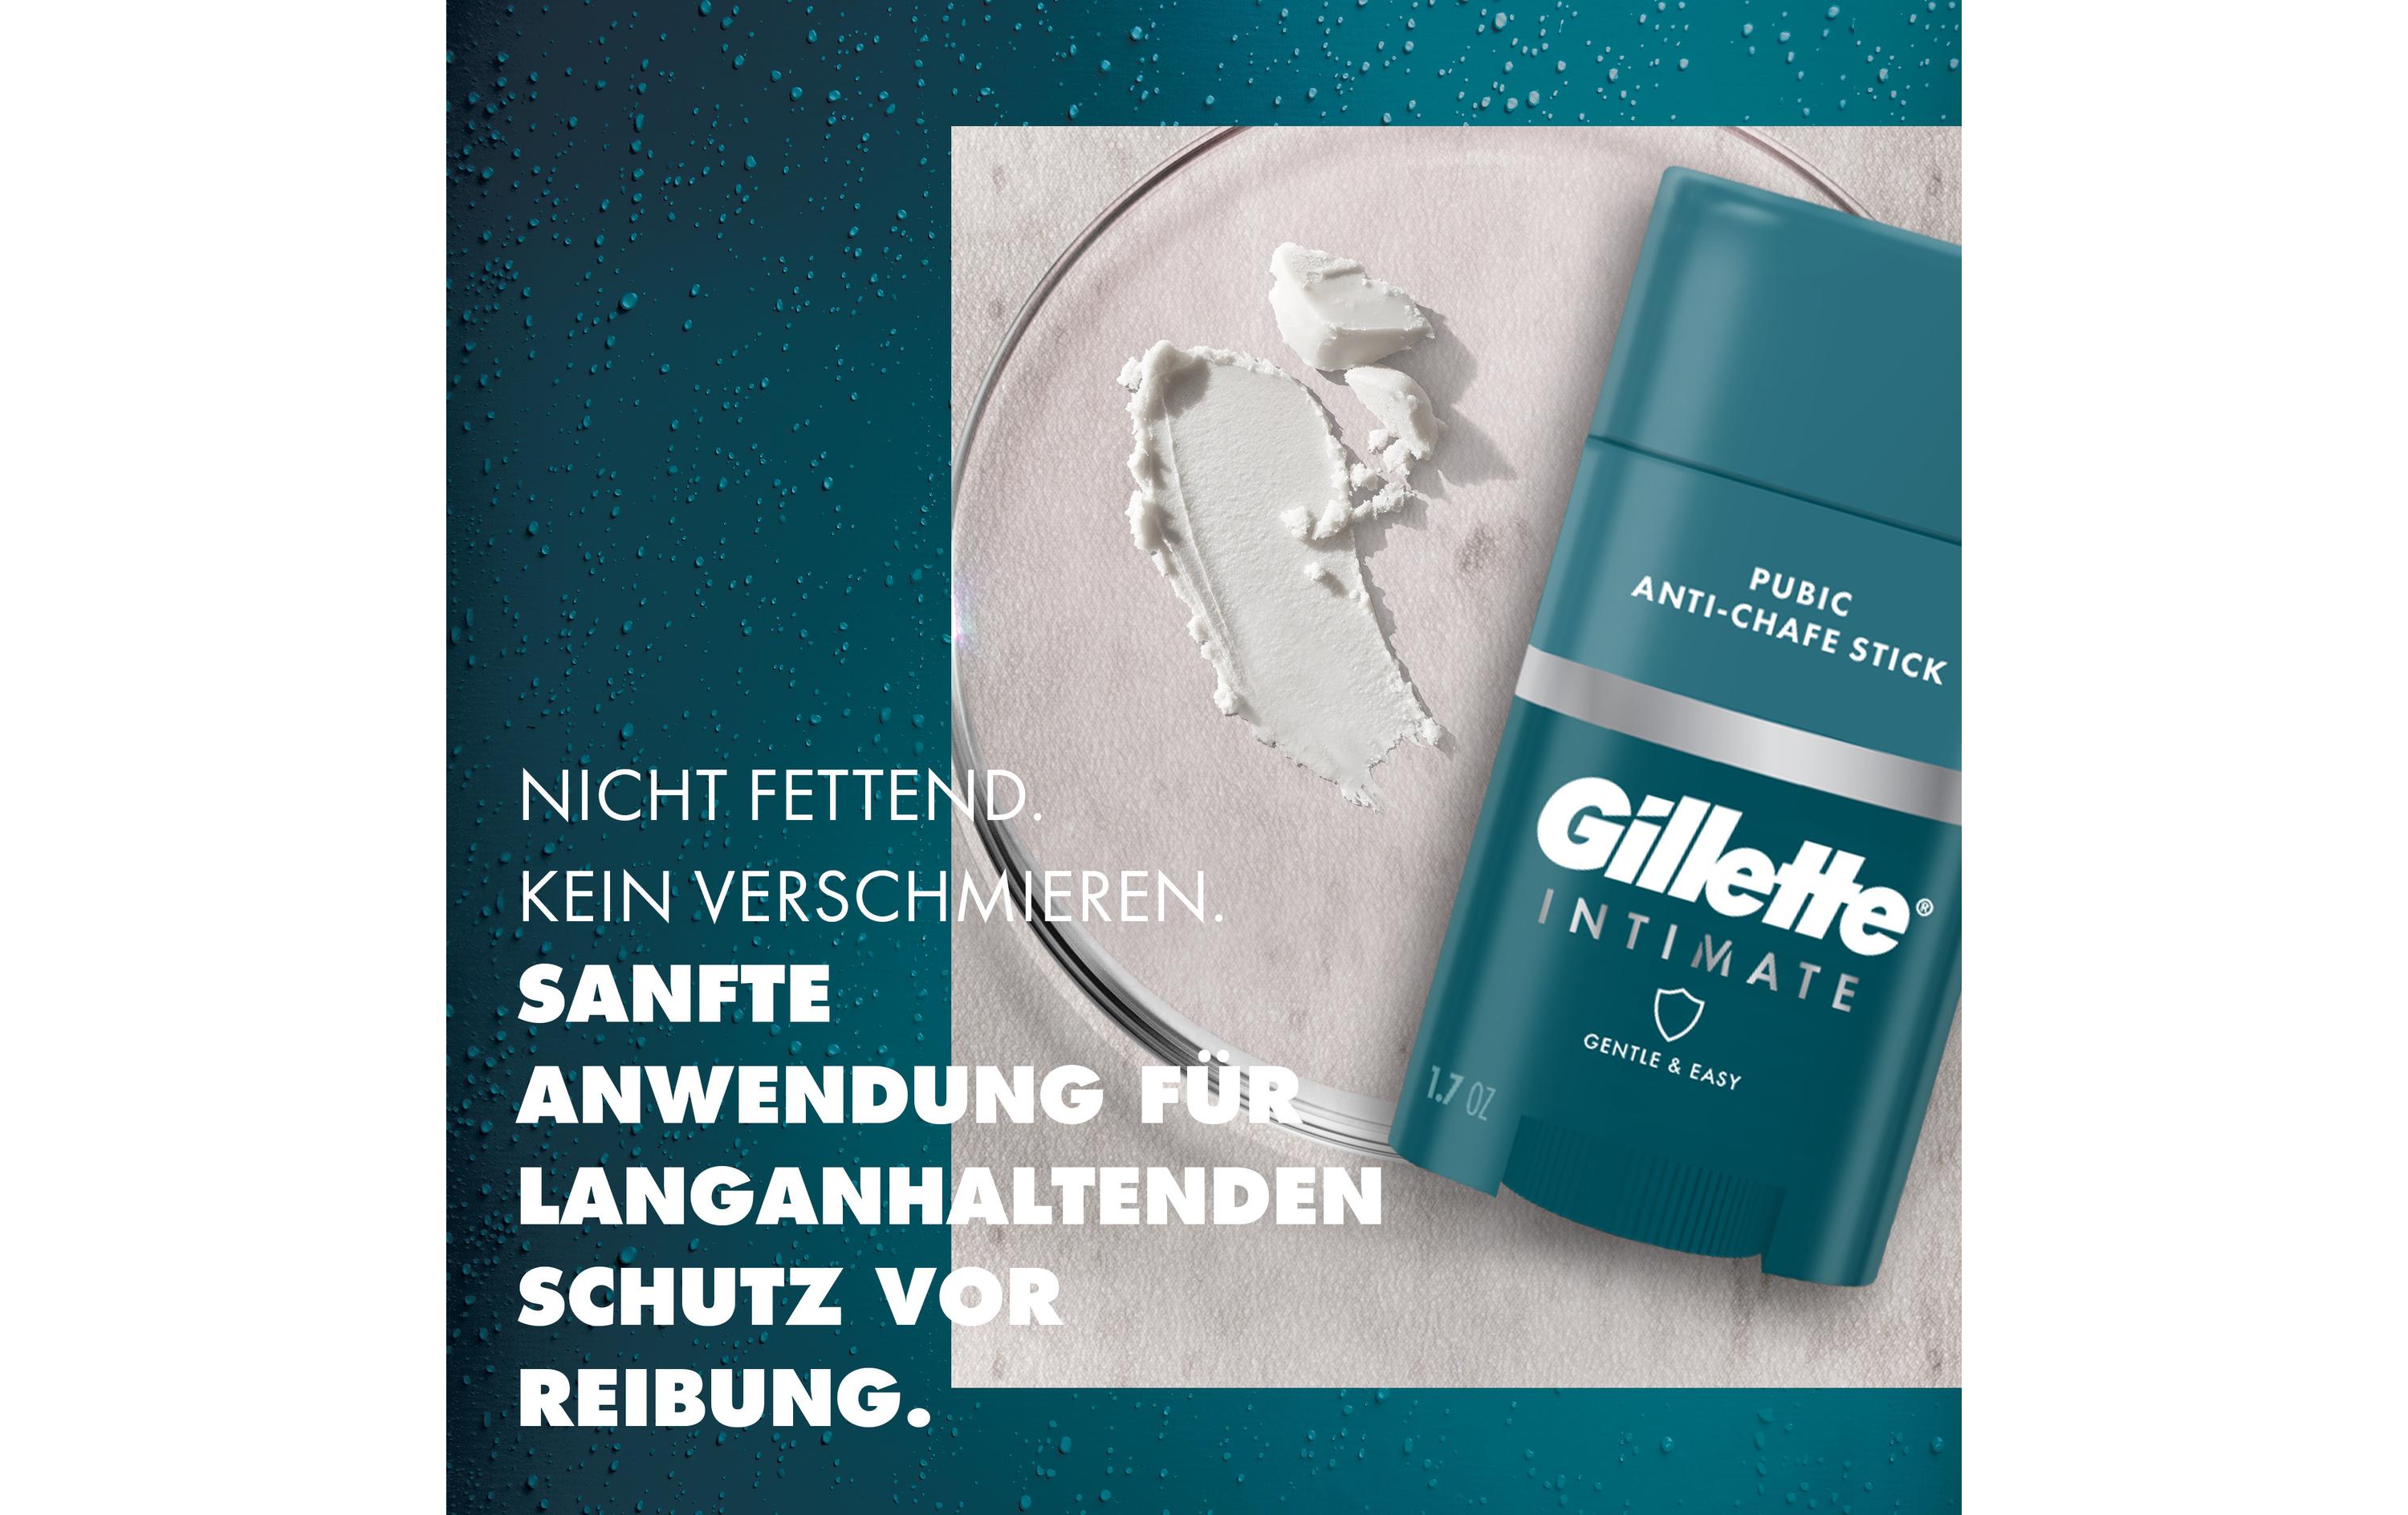 Gillette Anti-Scheuer-Stick Intimate 48 g1 Stück